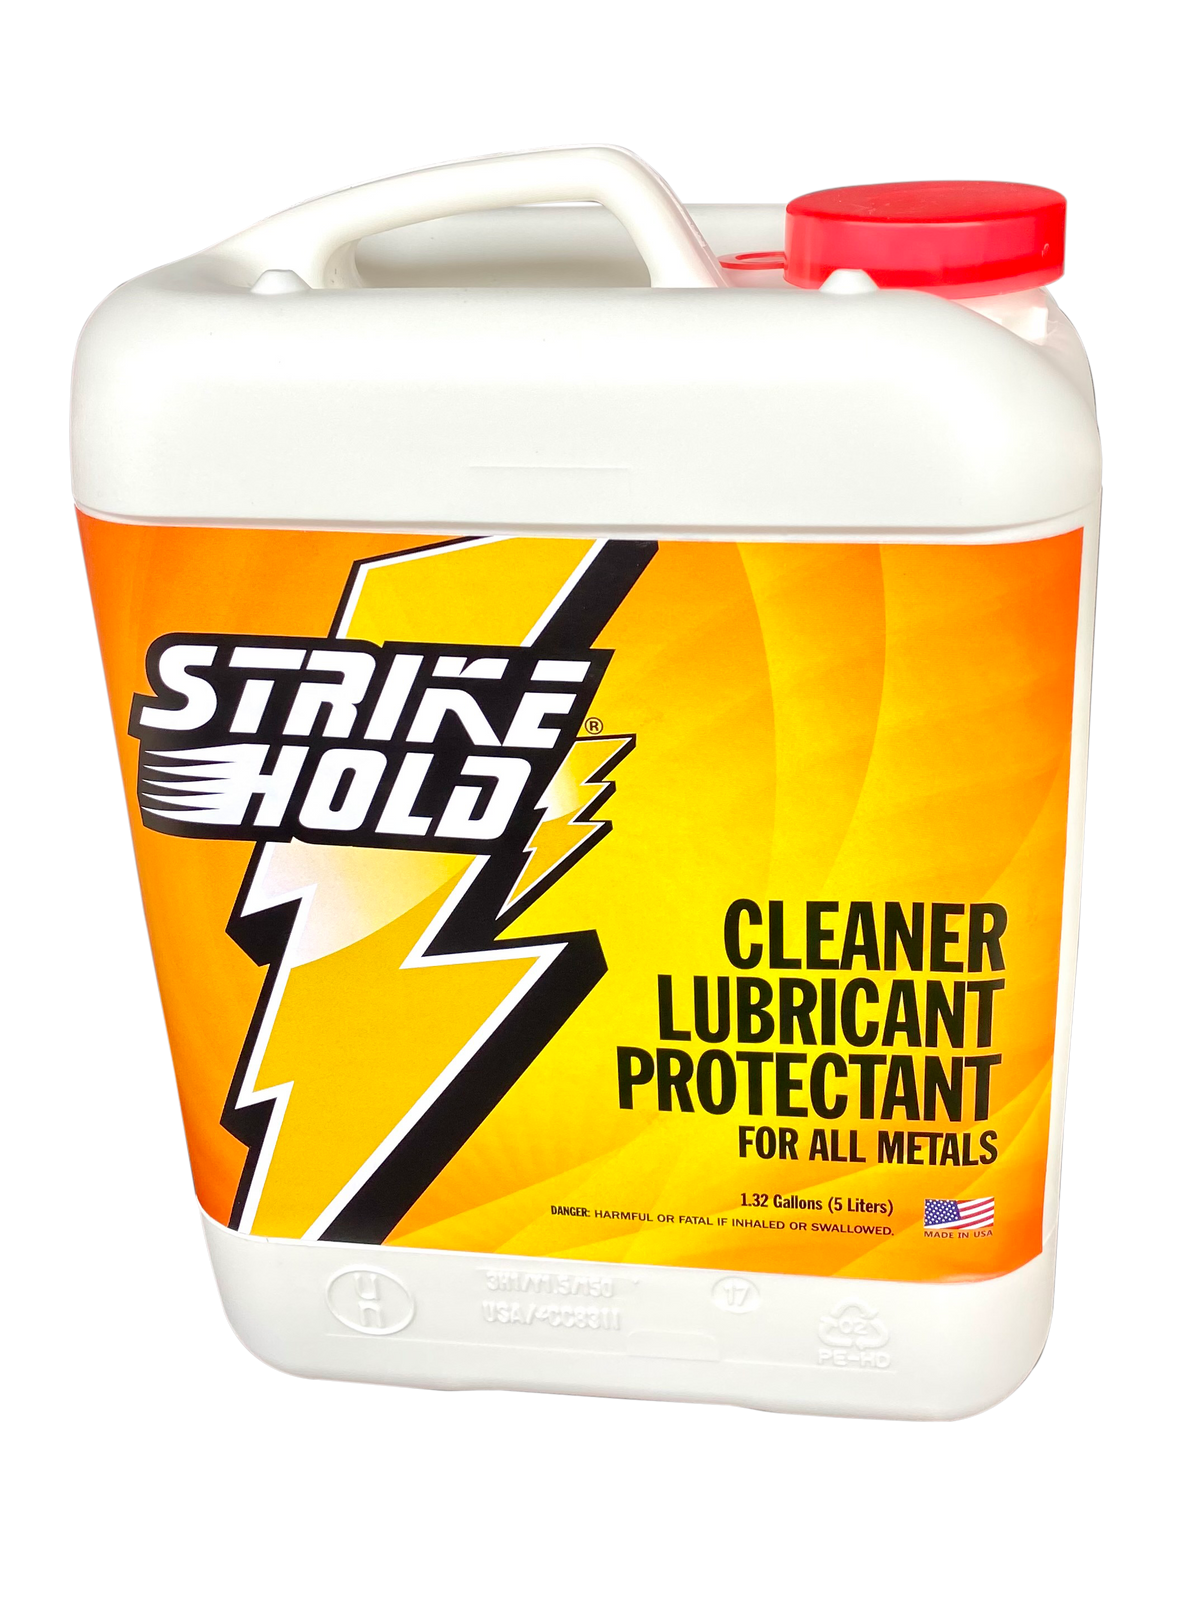 StrikeHold 1.32 Gallon / 5 Liter Jug